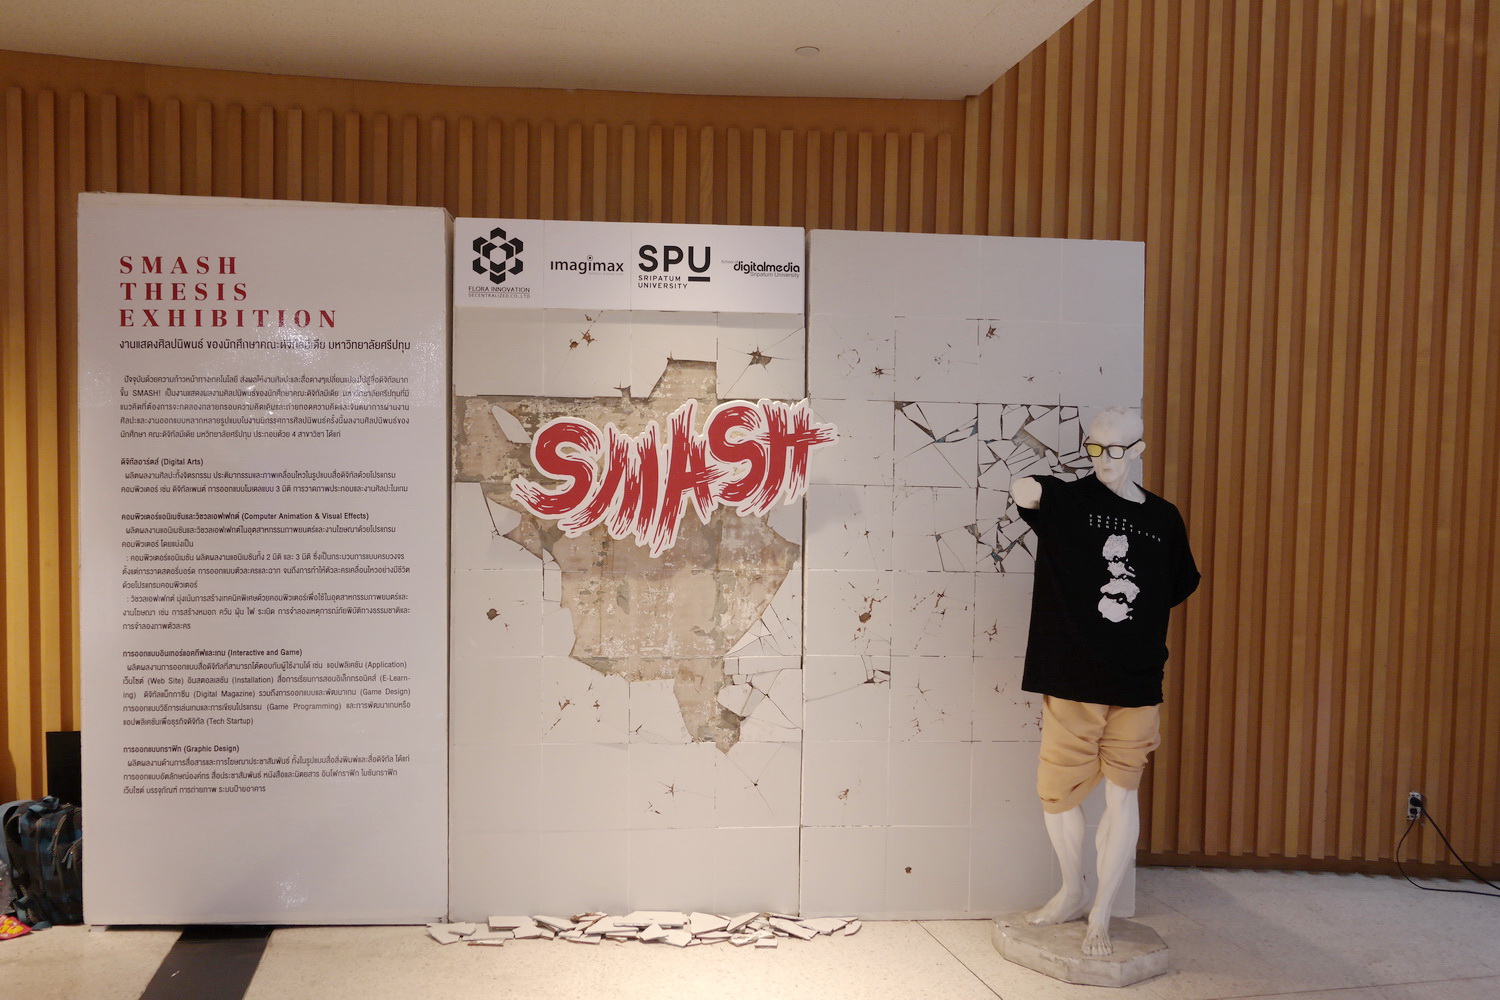 Smash Thesis Exhibition |
                        งานแสดงศิลปนิพนธ์ ของนักศึกษาคณะดิจิทัลมีเดีย มหาวิทยาลัยศรีปทุม